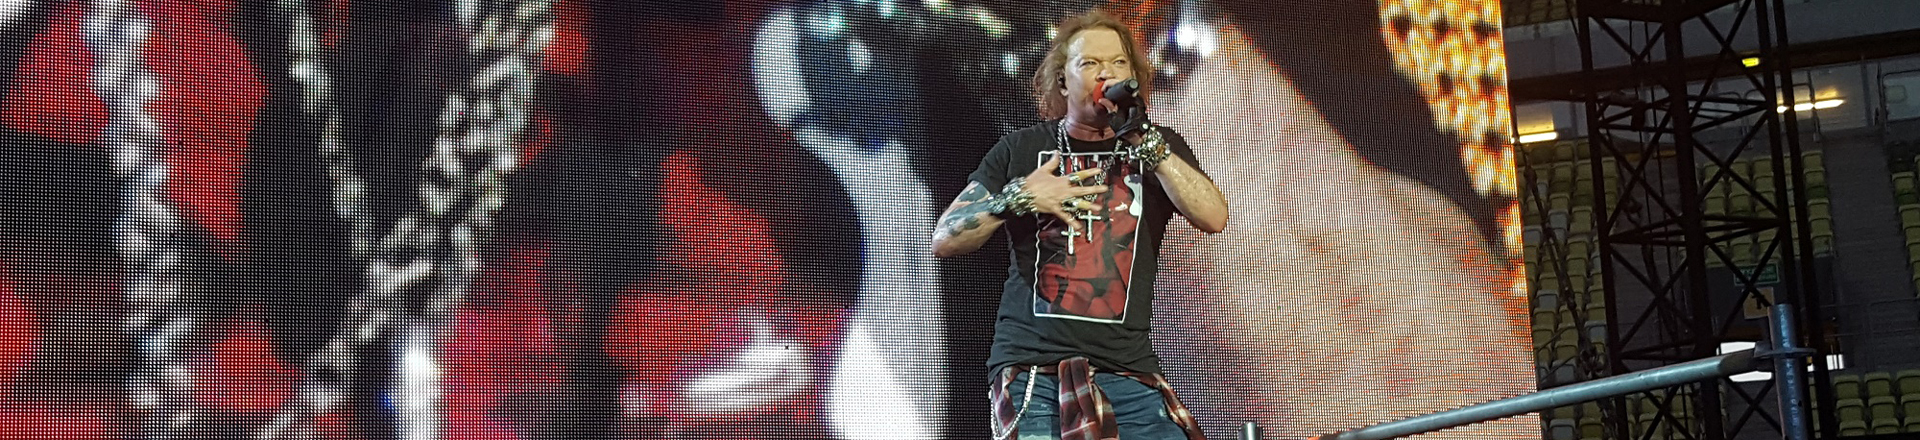 RELACJA: Guns N' Roses na Stadionie Energa Gdańsk